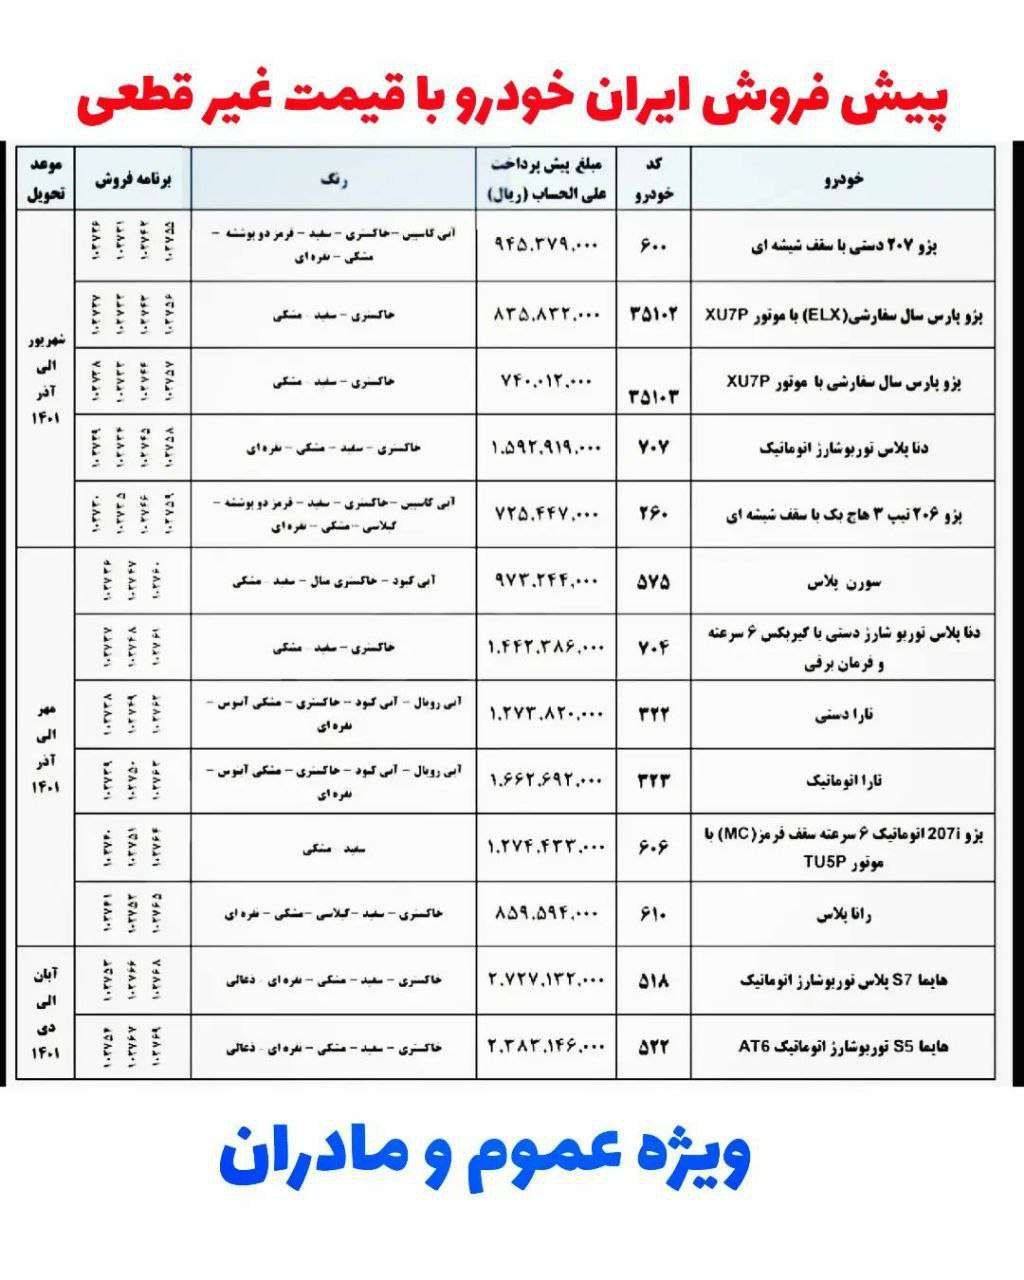 سایت اعلام اسامی برندگان ایران خودرو